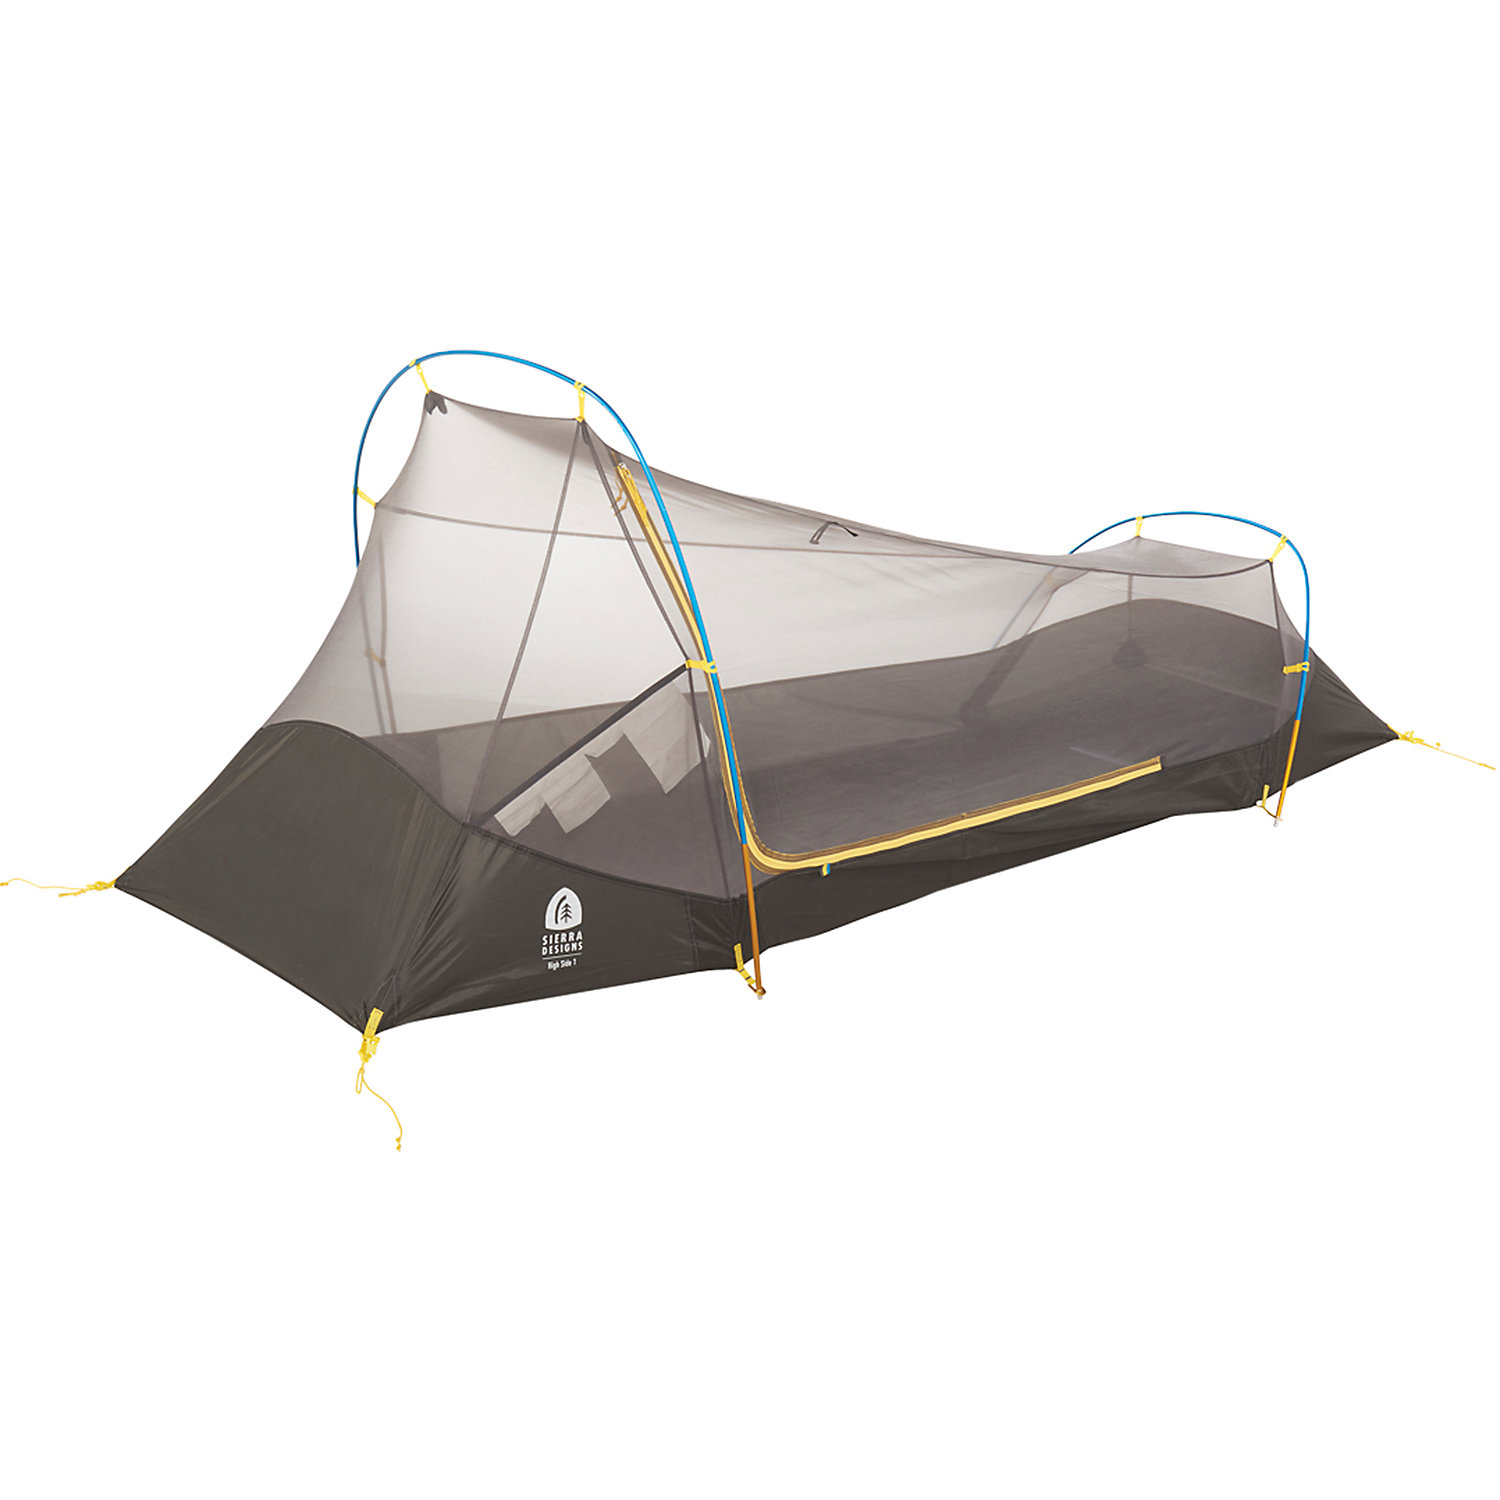 Одноместная палатка. Sierra Designs High Side 1 Tent. Футпринт для палатки Sea to Summit Alto tr1. Палатка одноместная двухслойная.